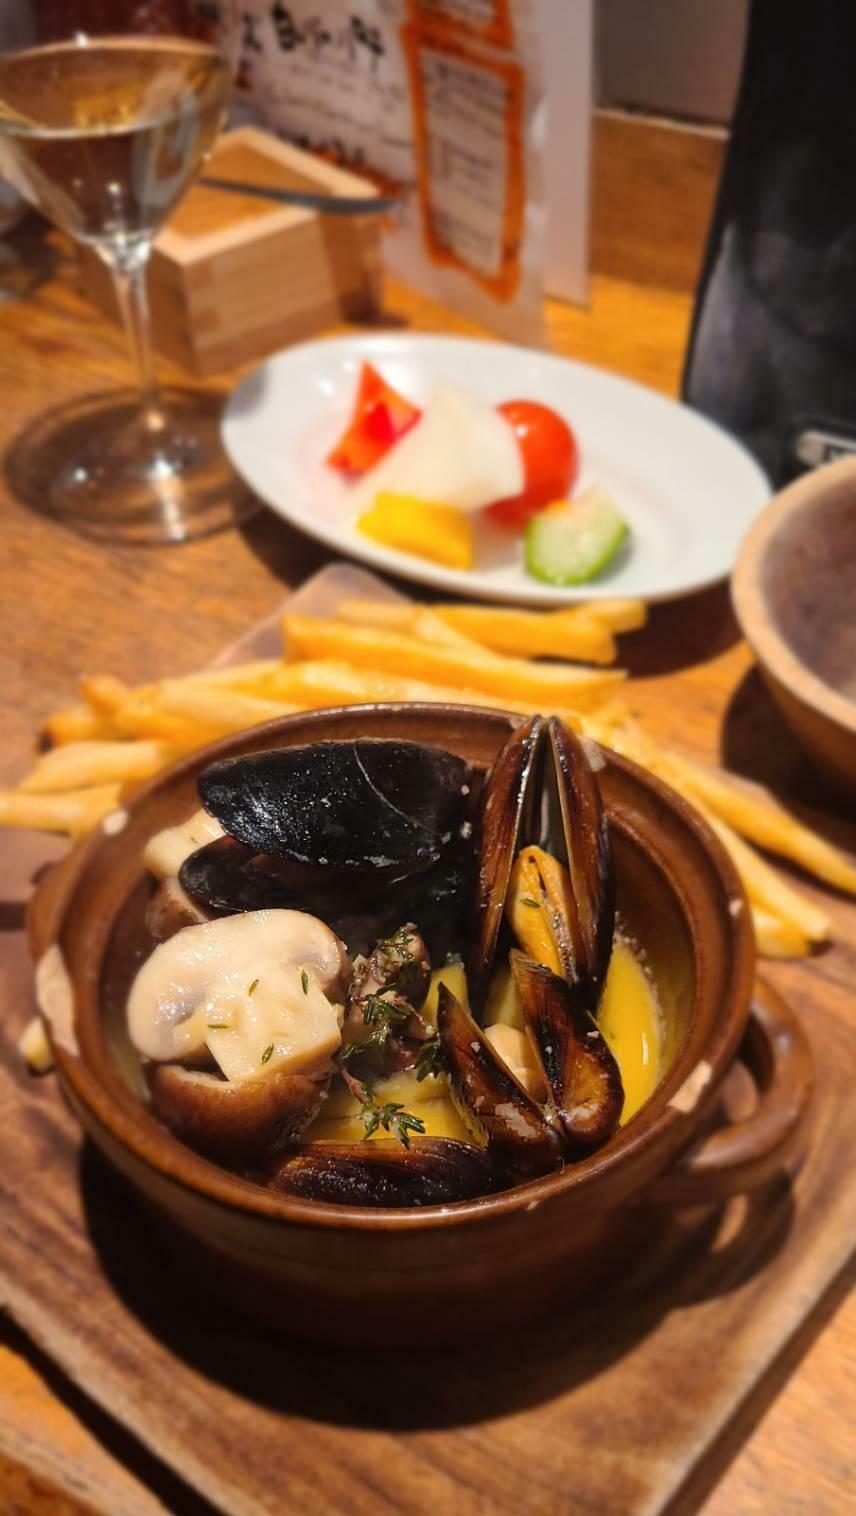 ムール貝の味付けも絶妙な塩梅かつ居酒屋らしいベルギースタイルの提案でポテトと楽しめます。